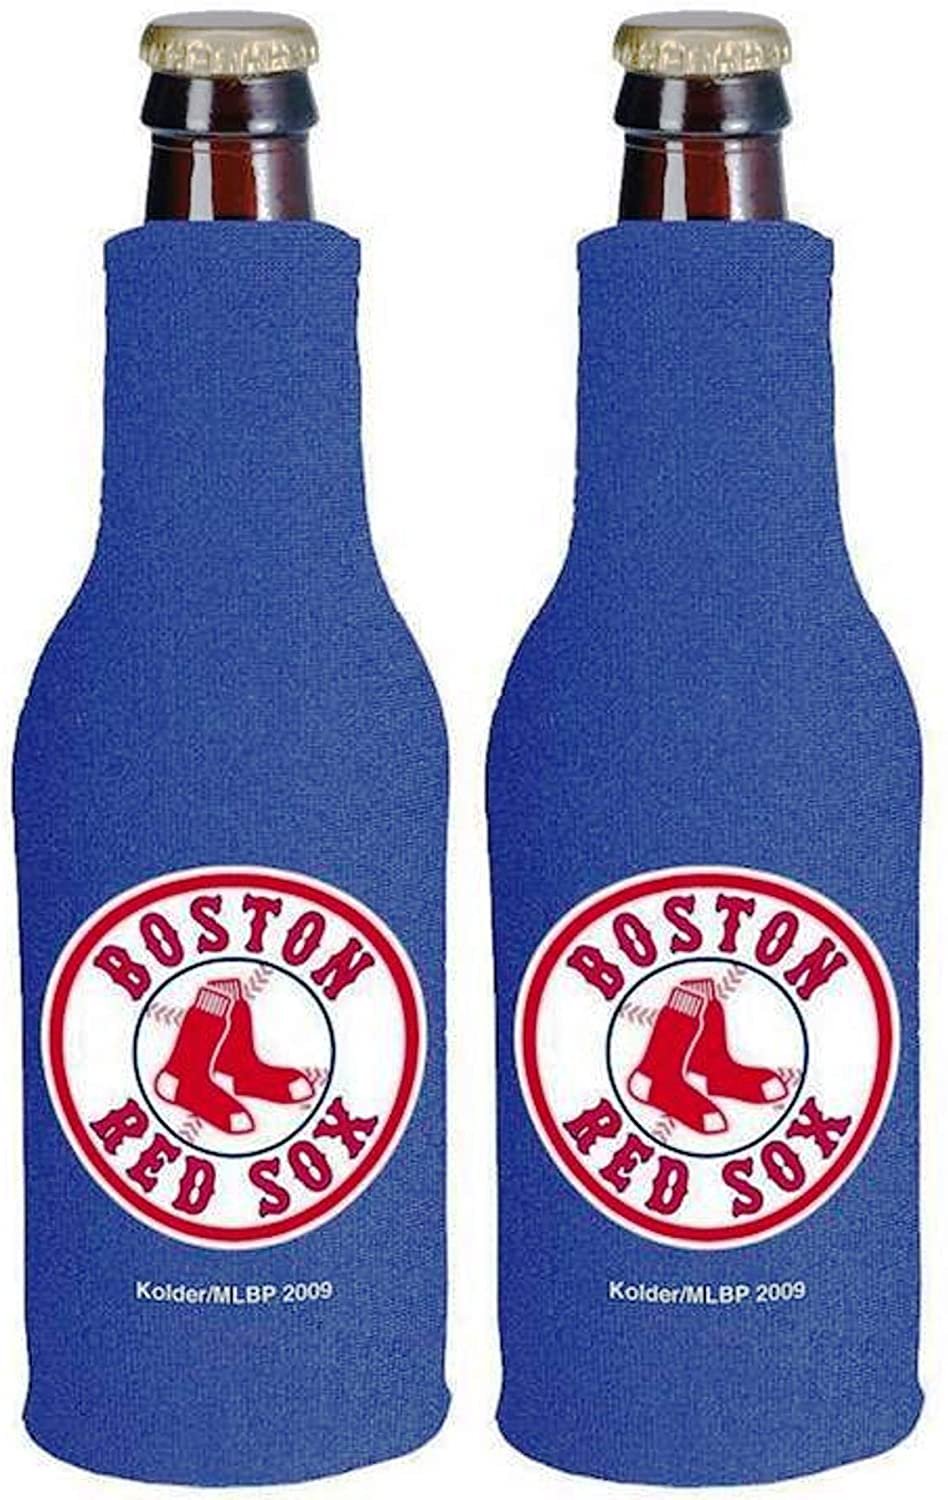 Boston Red Sox Pair of 16oz Drink Zipper Bottle Cooler Insulated Neoprene Beverage Holder, Logo Design